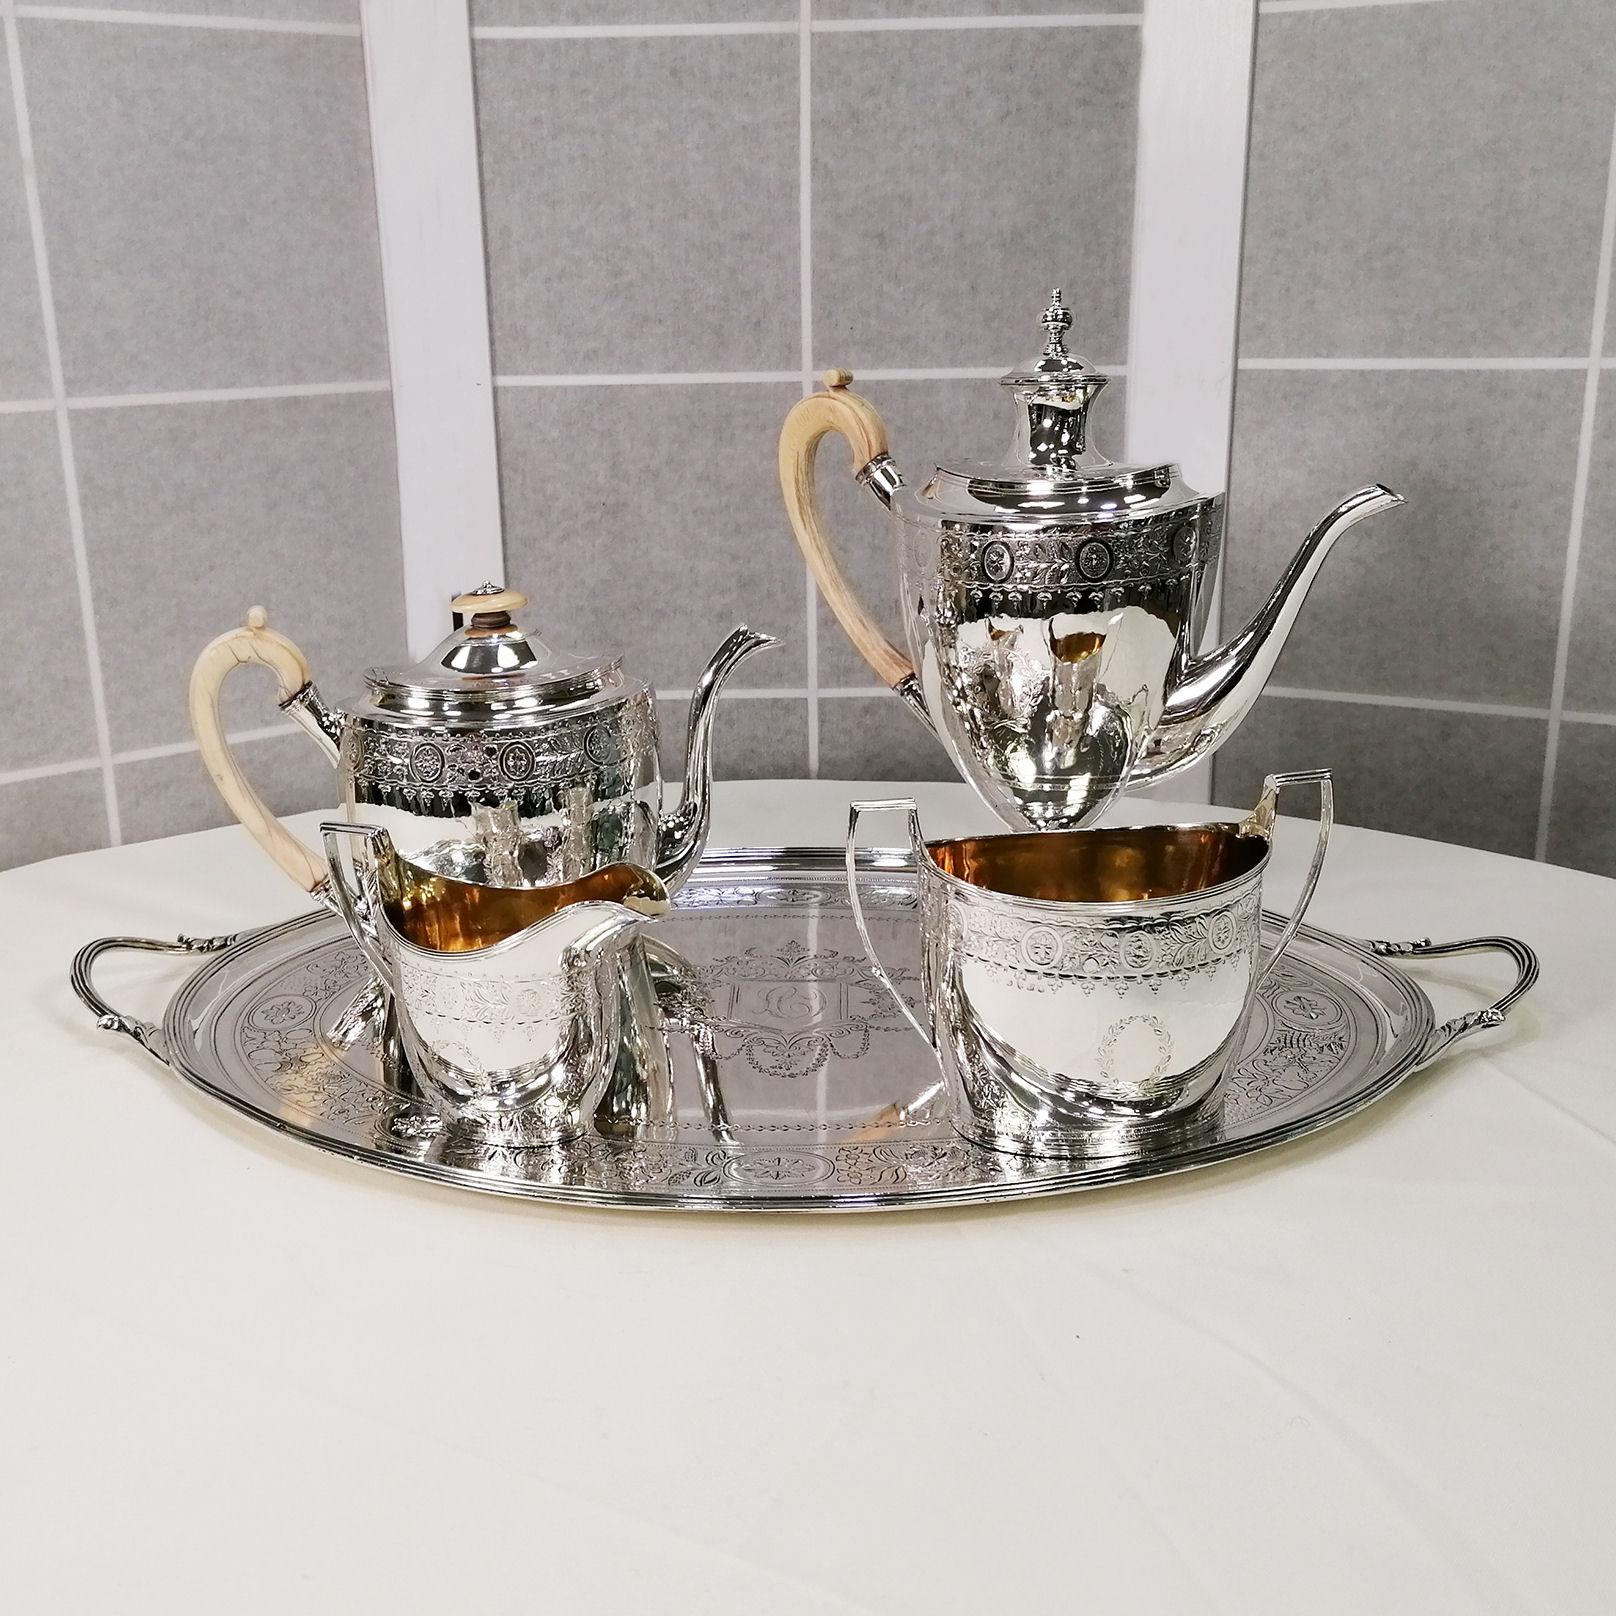 Seltenes George III Sterling Silber Tee-Kaffee Set Elfenbein Griffe plus Tablett 1799-1800
Dieses hervorragende Teeservice aus antikem Sterlingsilber von George III., das 1798-9 in London von Charles Asprey gestempelt wurde, hat eine ovale Form und